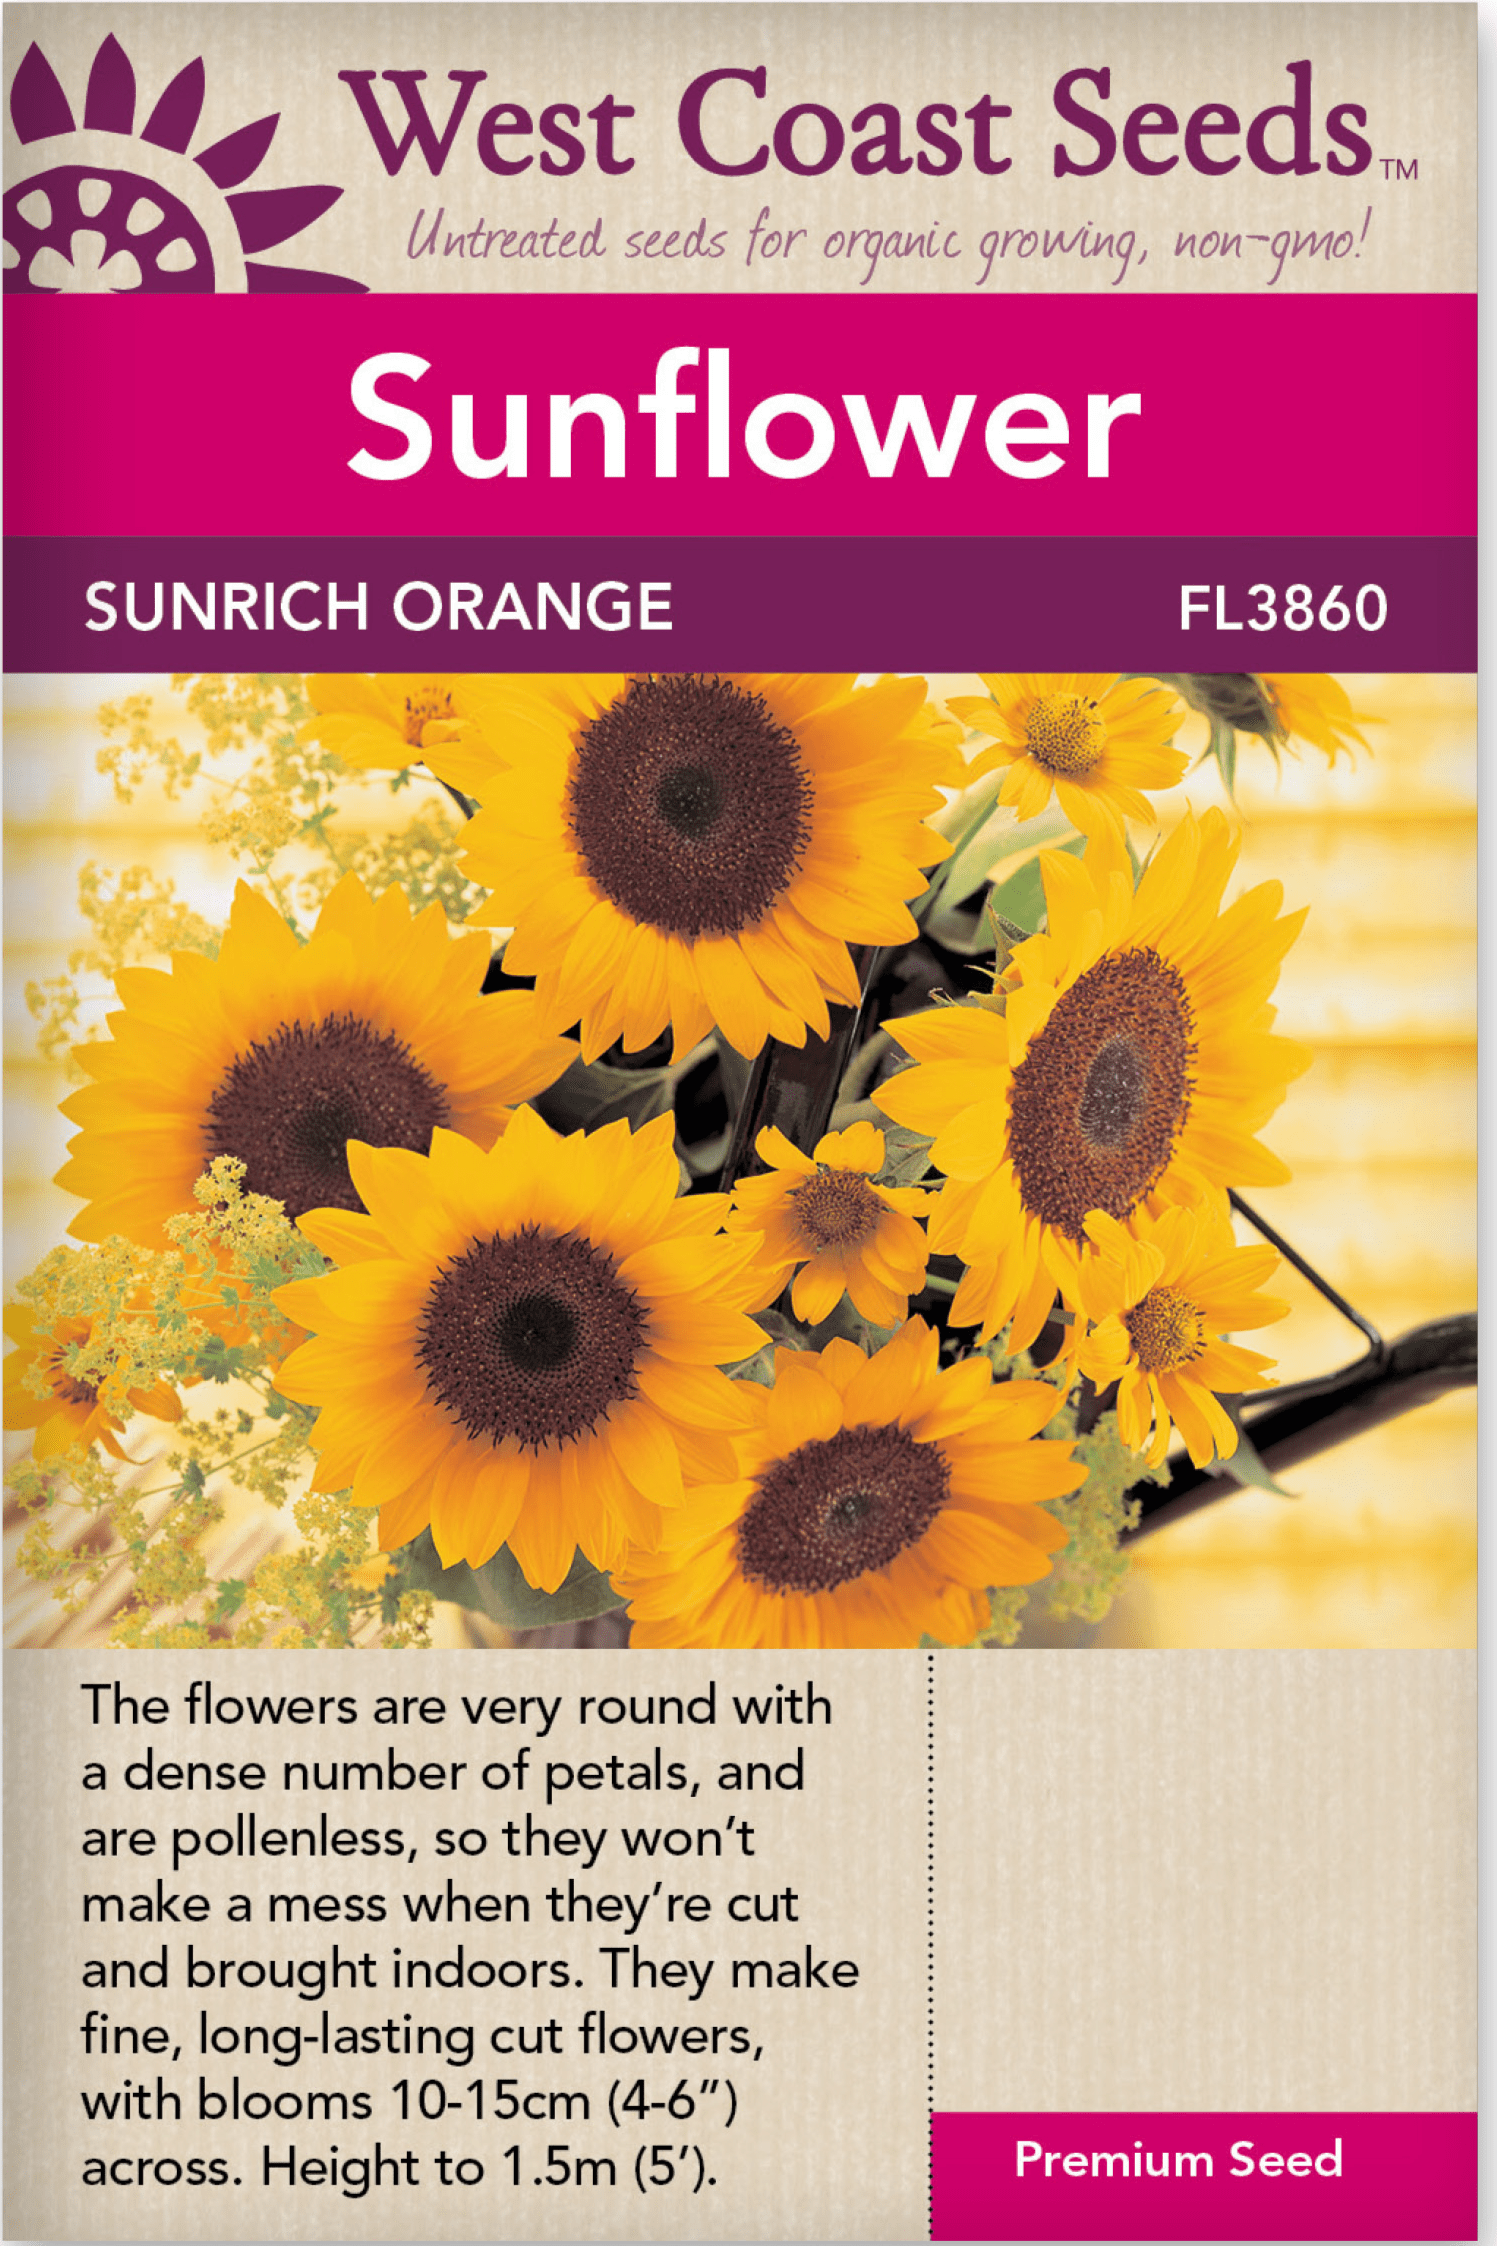 david sunflower seeds barcode